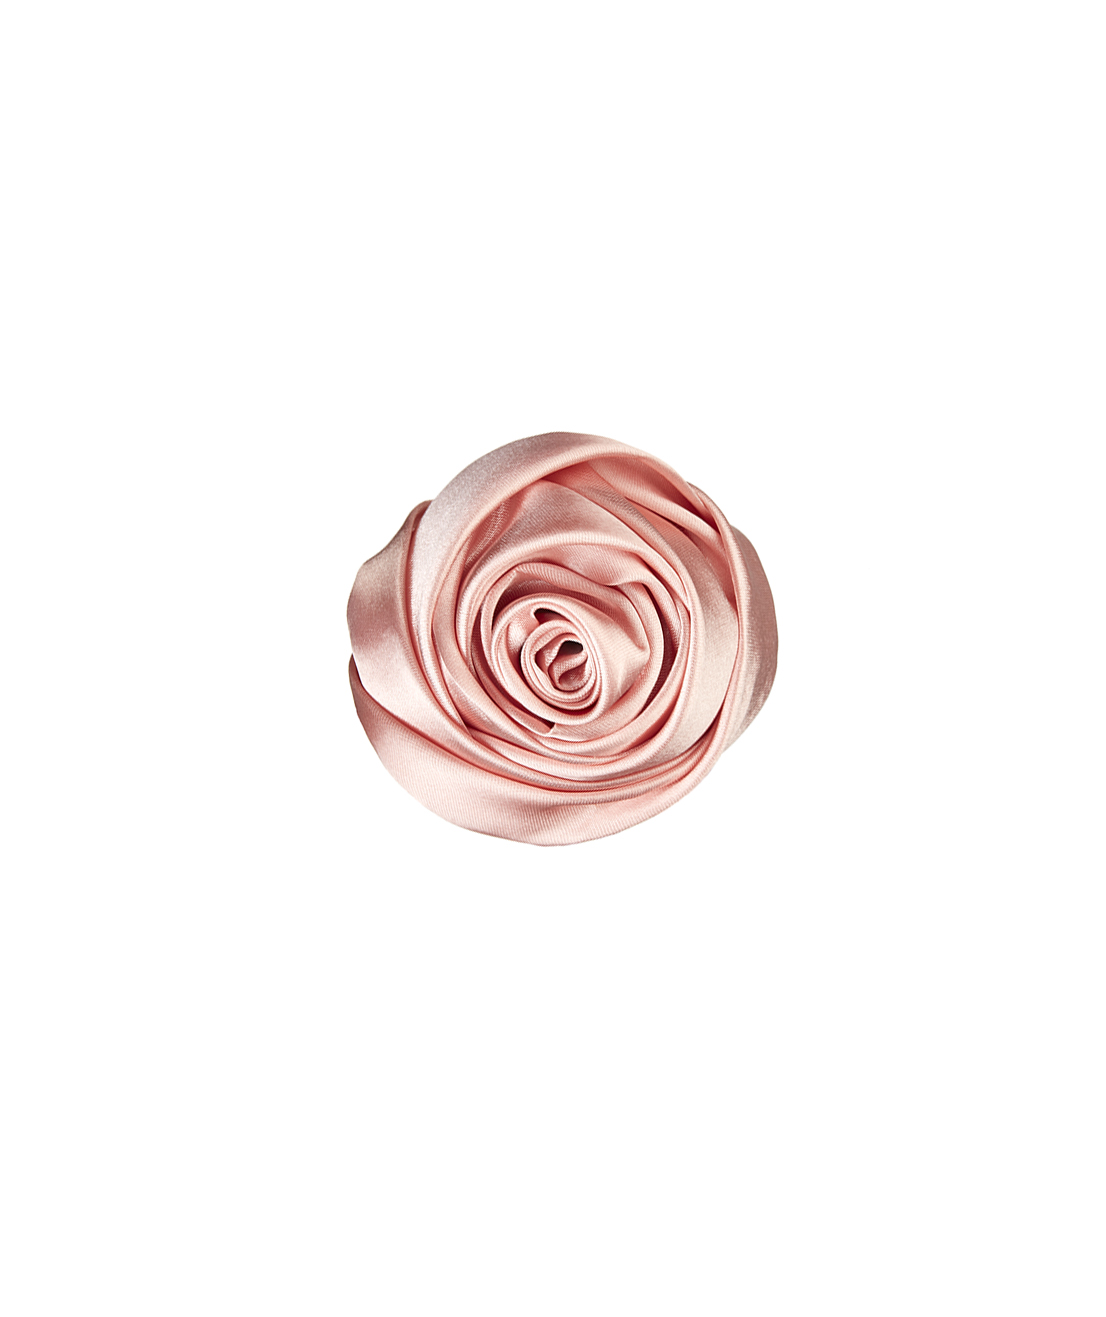 Stockholm Rose